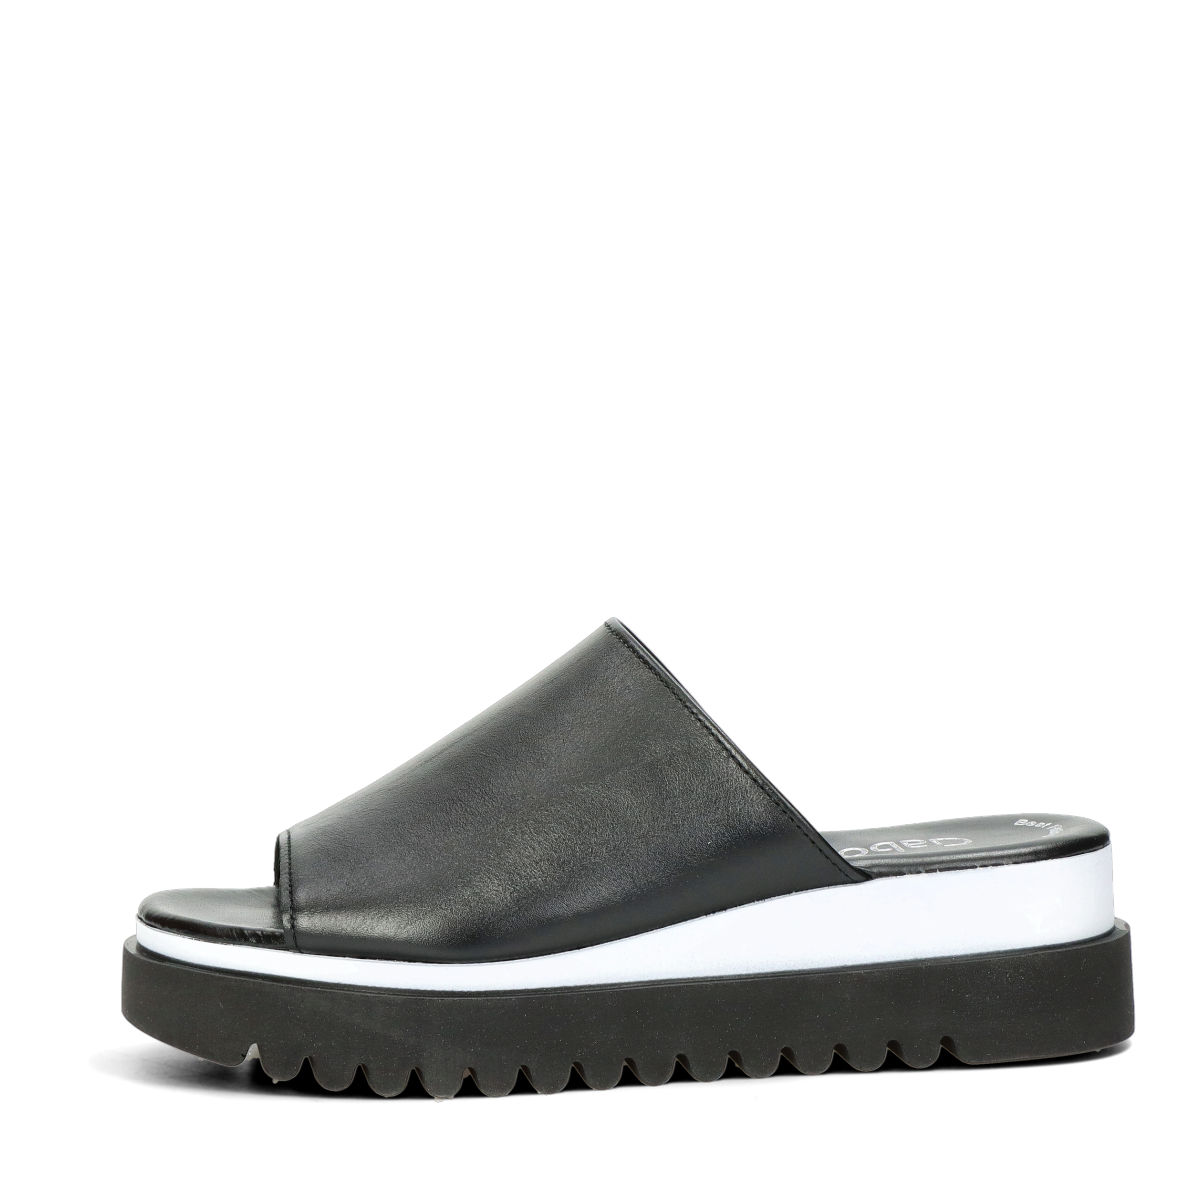 afkom efterligne hjemmelevering Gabor women's leather slippers - black | Robel.shoes